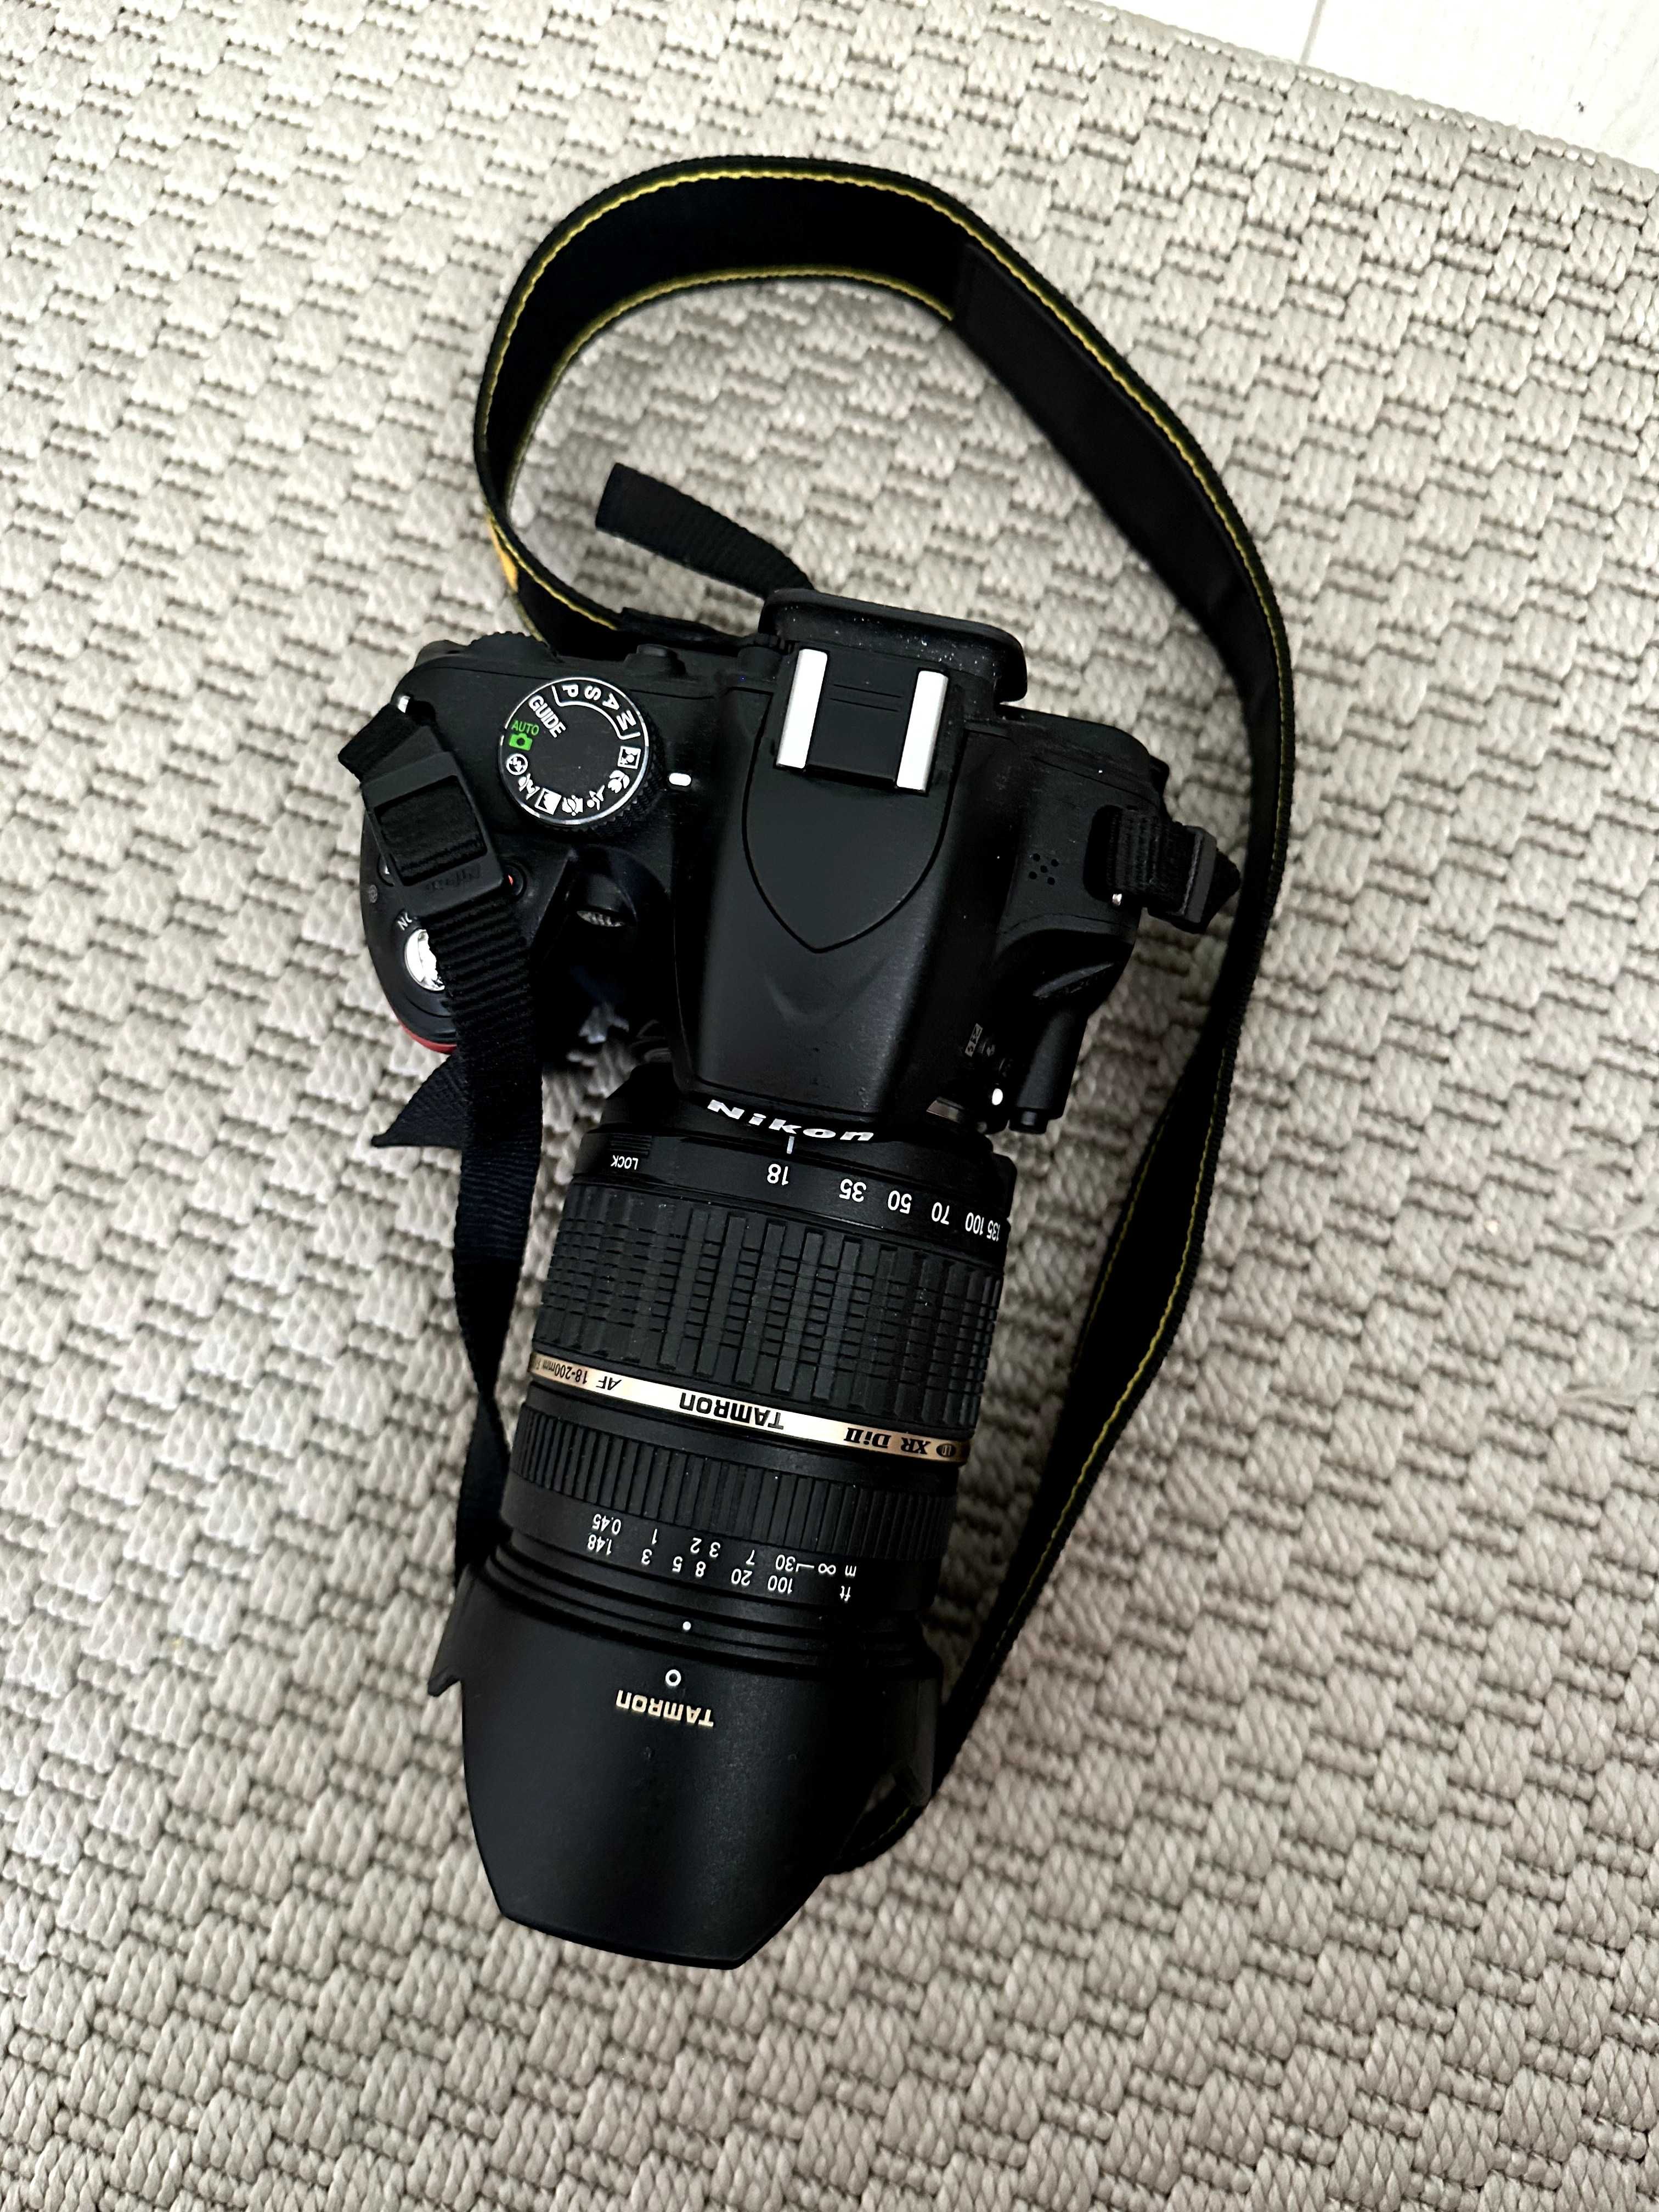 Vand Nikon D3200 + Obiectiv Tamron 18-200mm + Acessorii | D3100 D3300